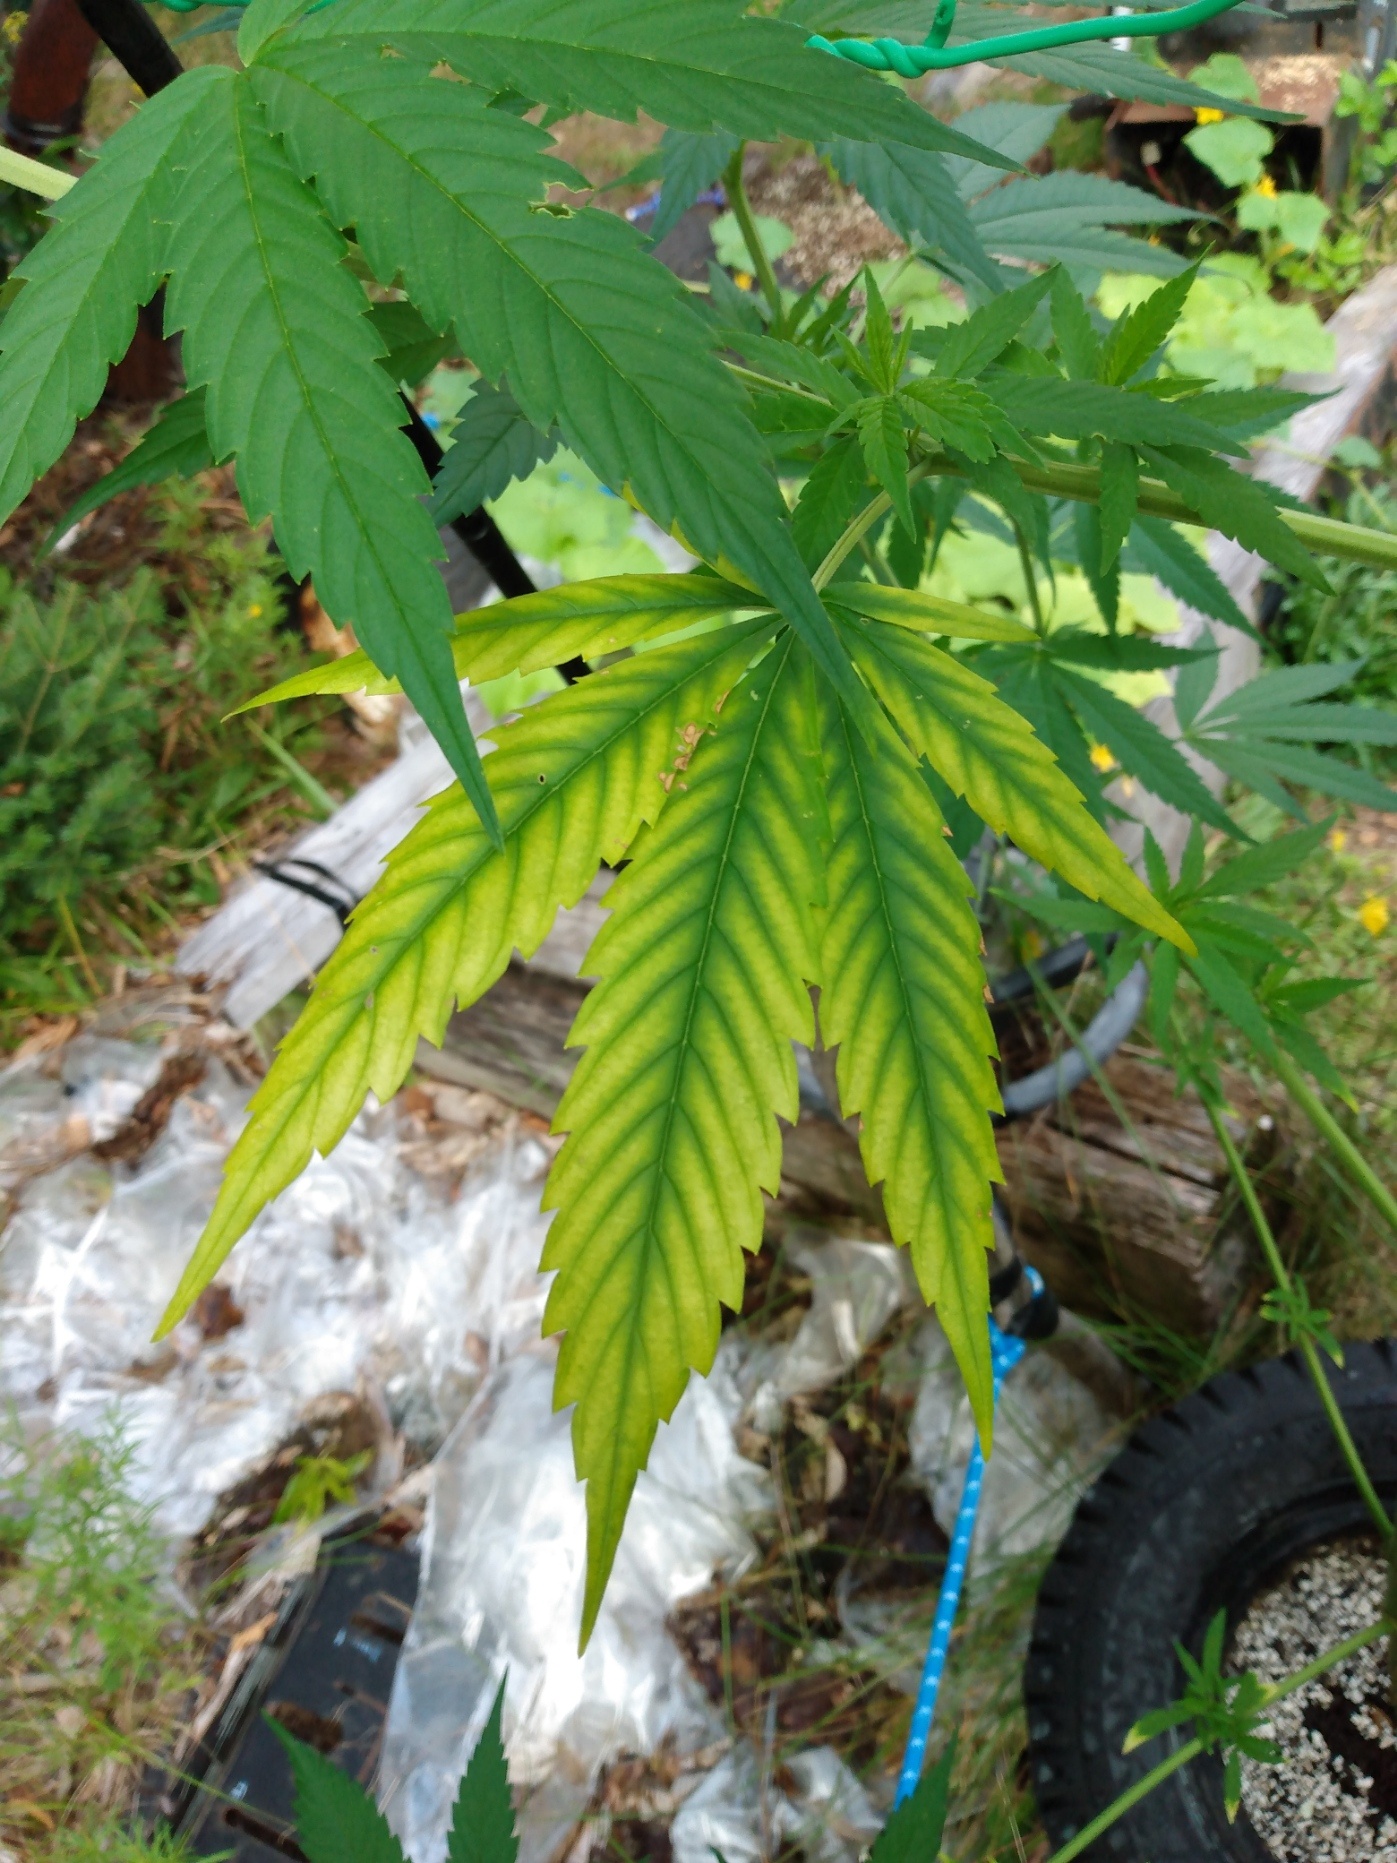 Cannabis leaf symptoms on my plants